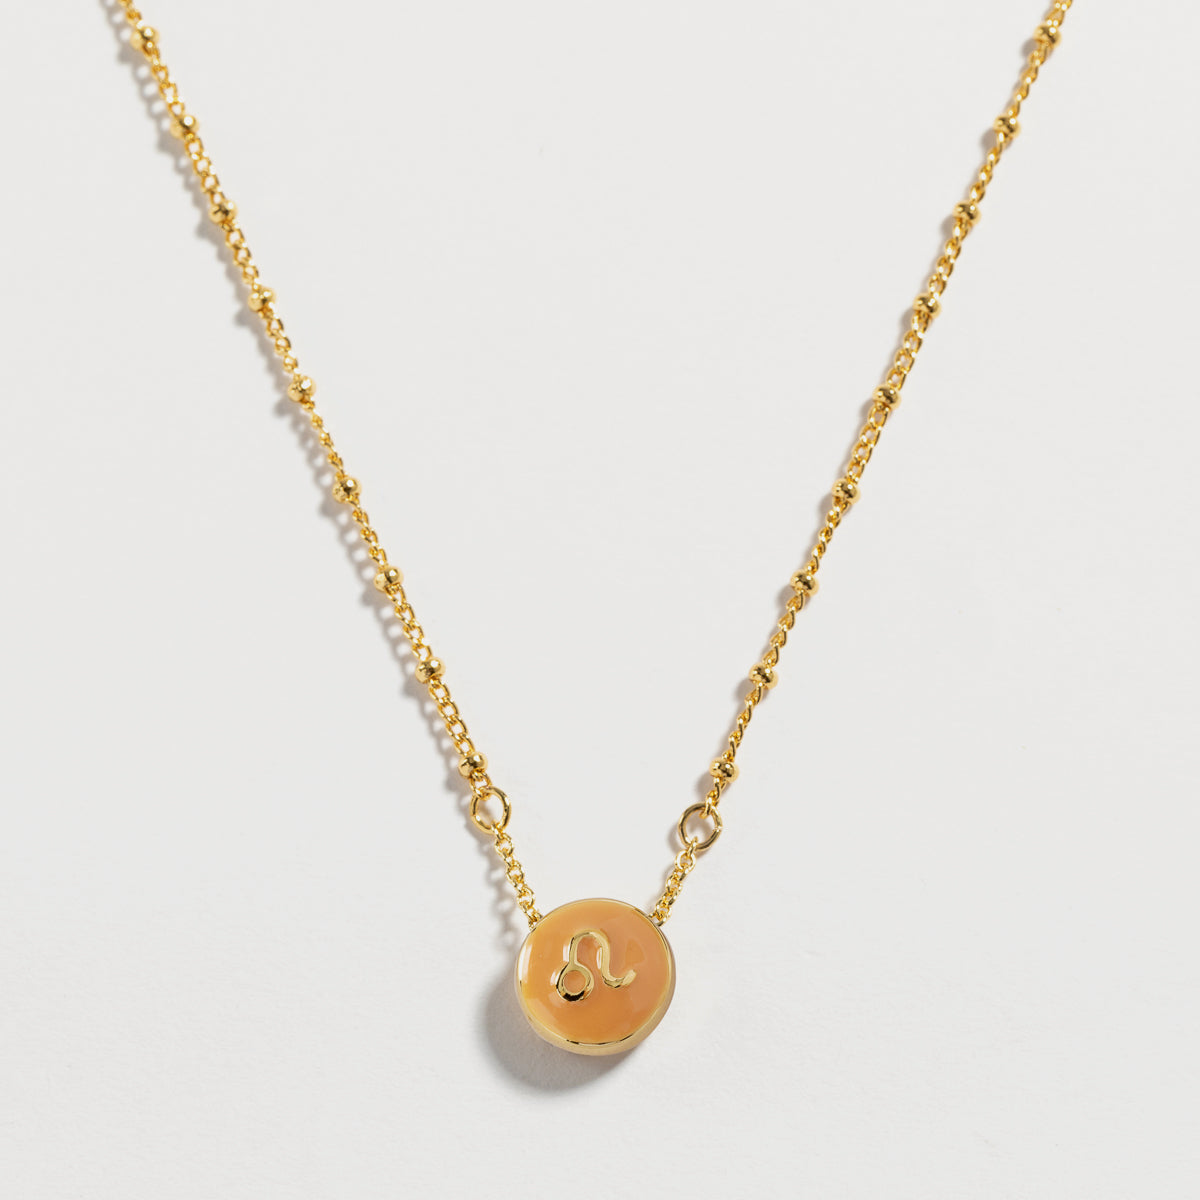 astrological sign leo necklace